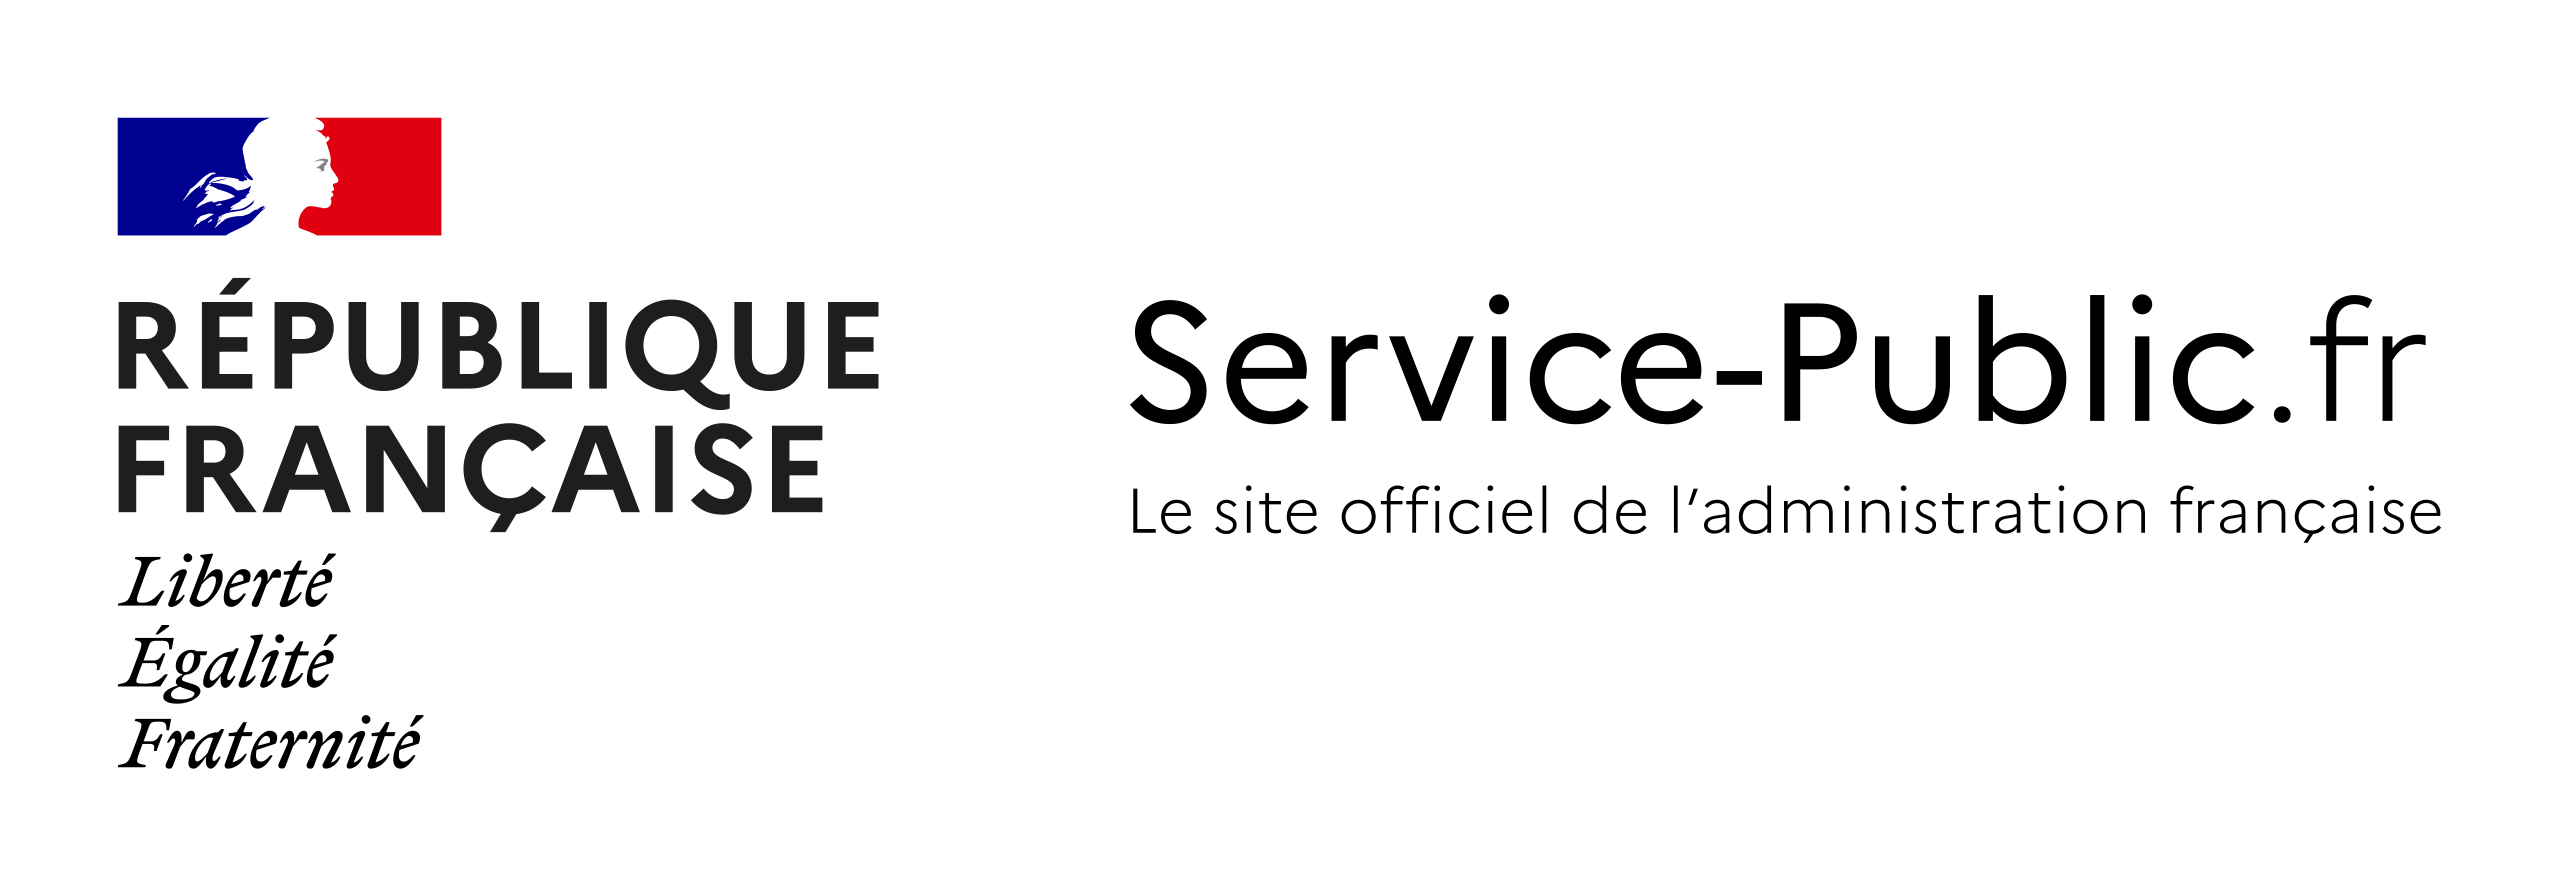 Une nouvelle version de Service-Public.fr, organisée autour des événements  de vie - Labo